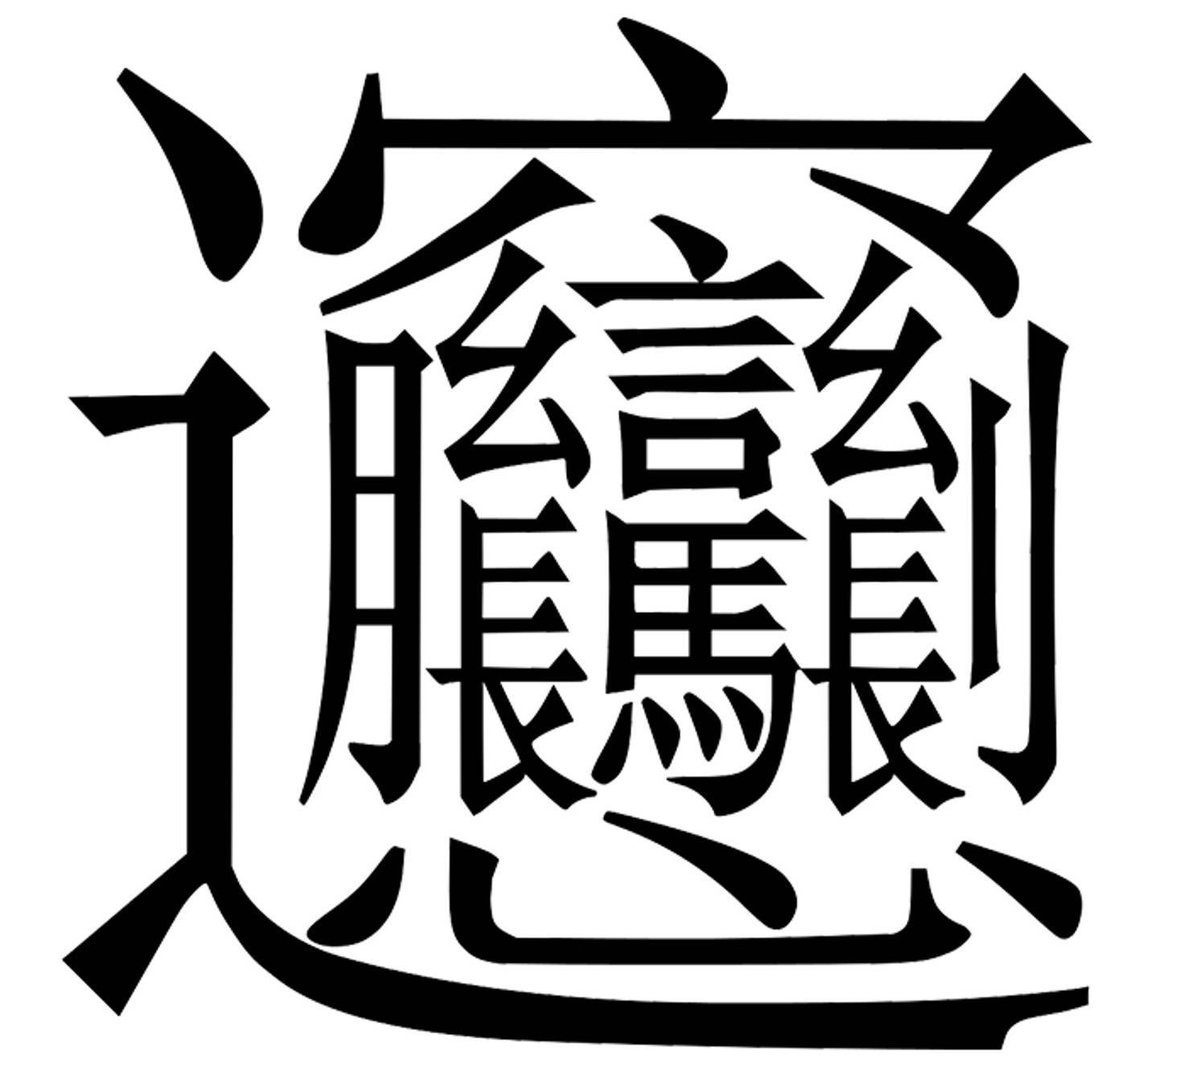 iPhoneの中国語キーボードで拼音入れても変換できんかったw
biangbiang面
画数エグいなぁ…笑 